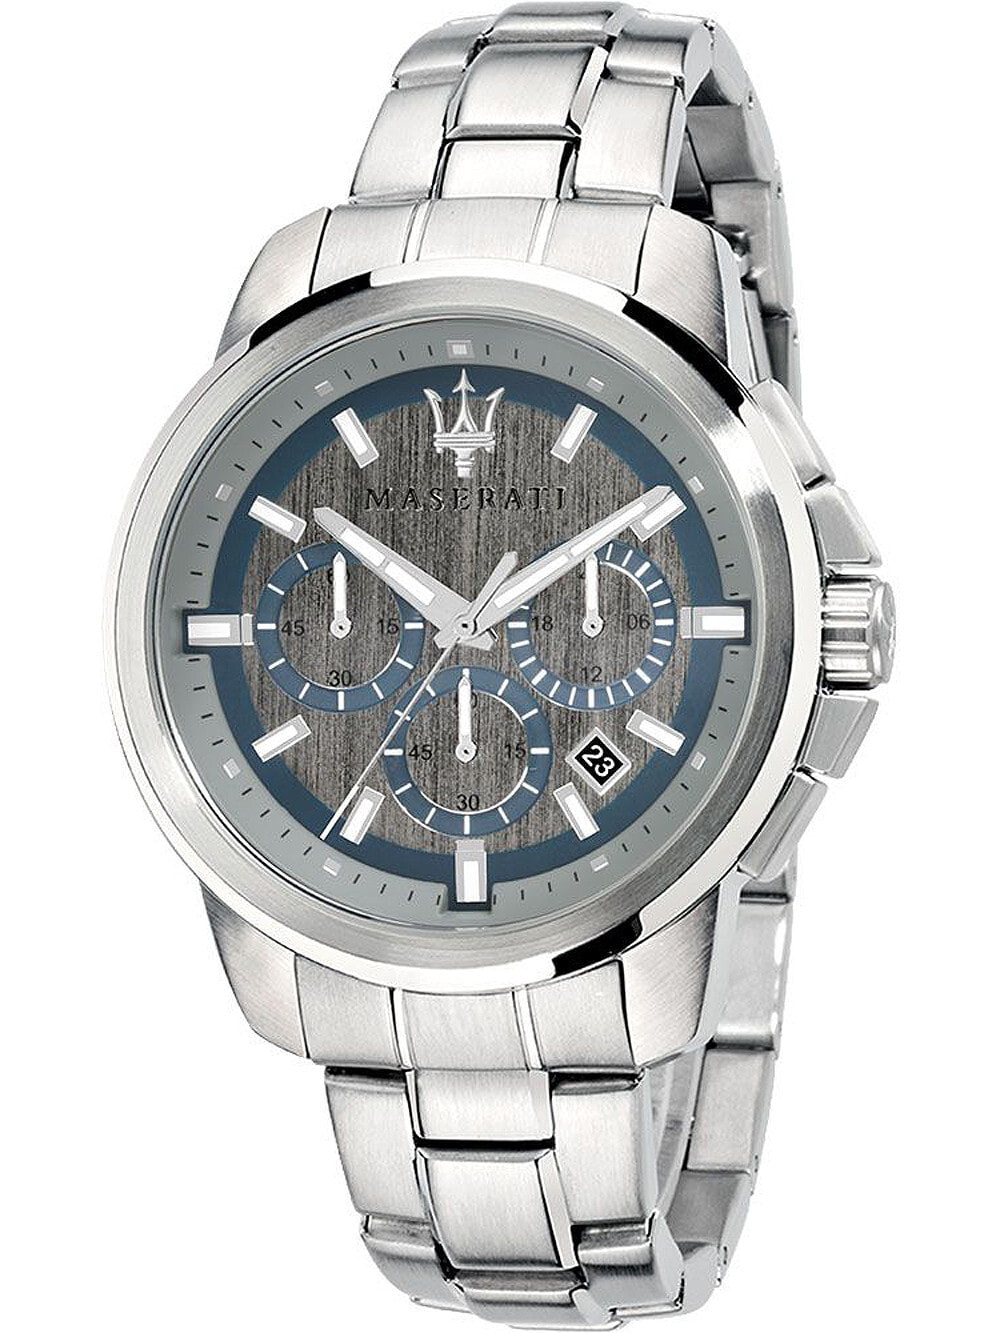 Мужские наручные часы с серебряным браслетом Maserati R8873621006 Successo chrono 44mm 5ATM